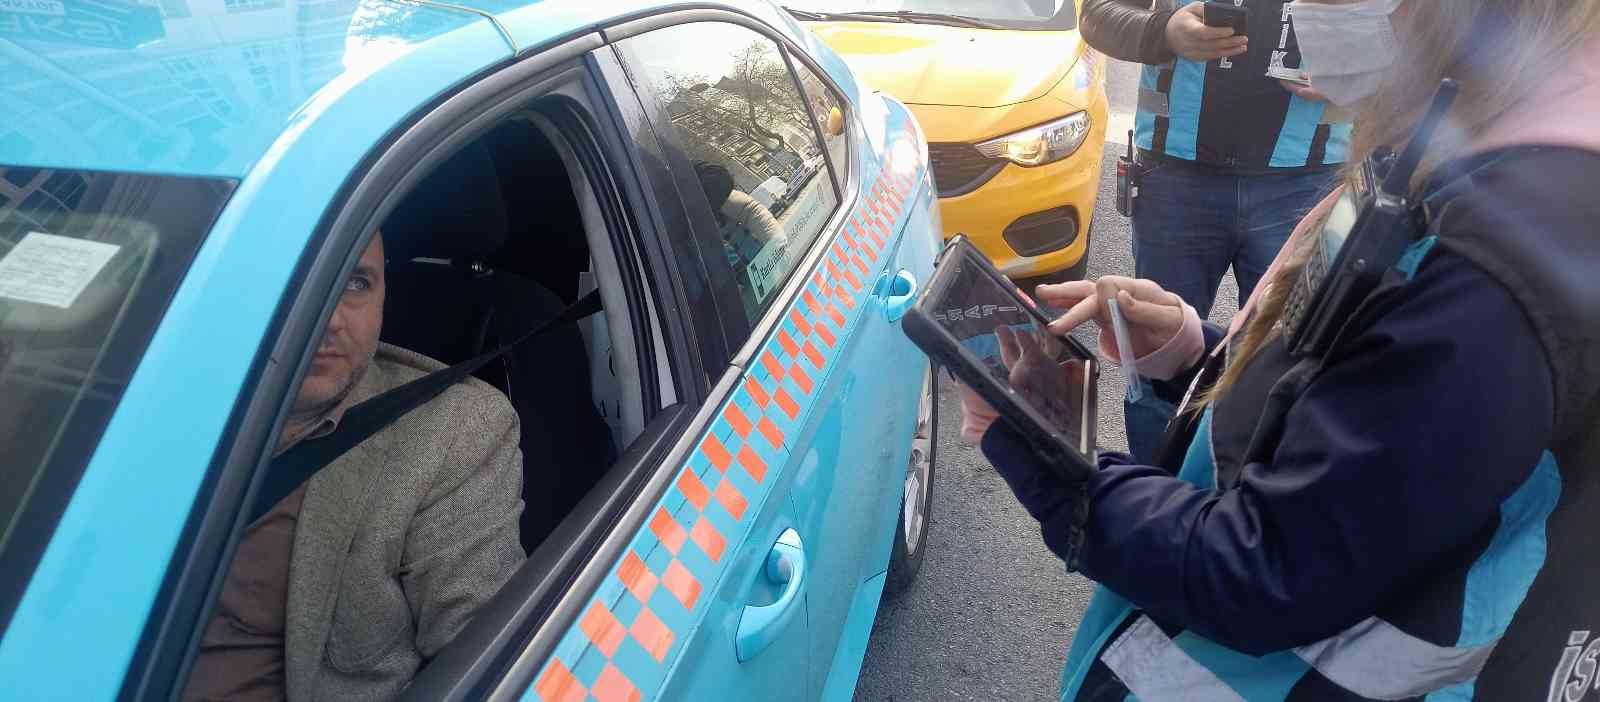 Şişli’de ticari taksi denetimi #istanbul